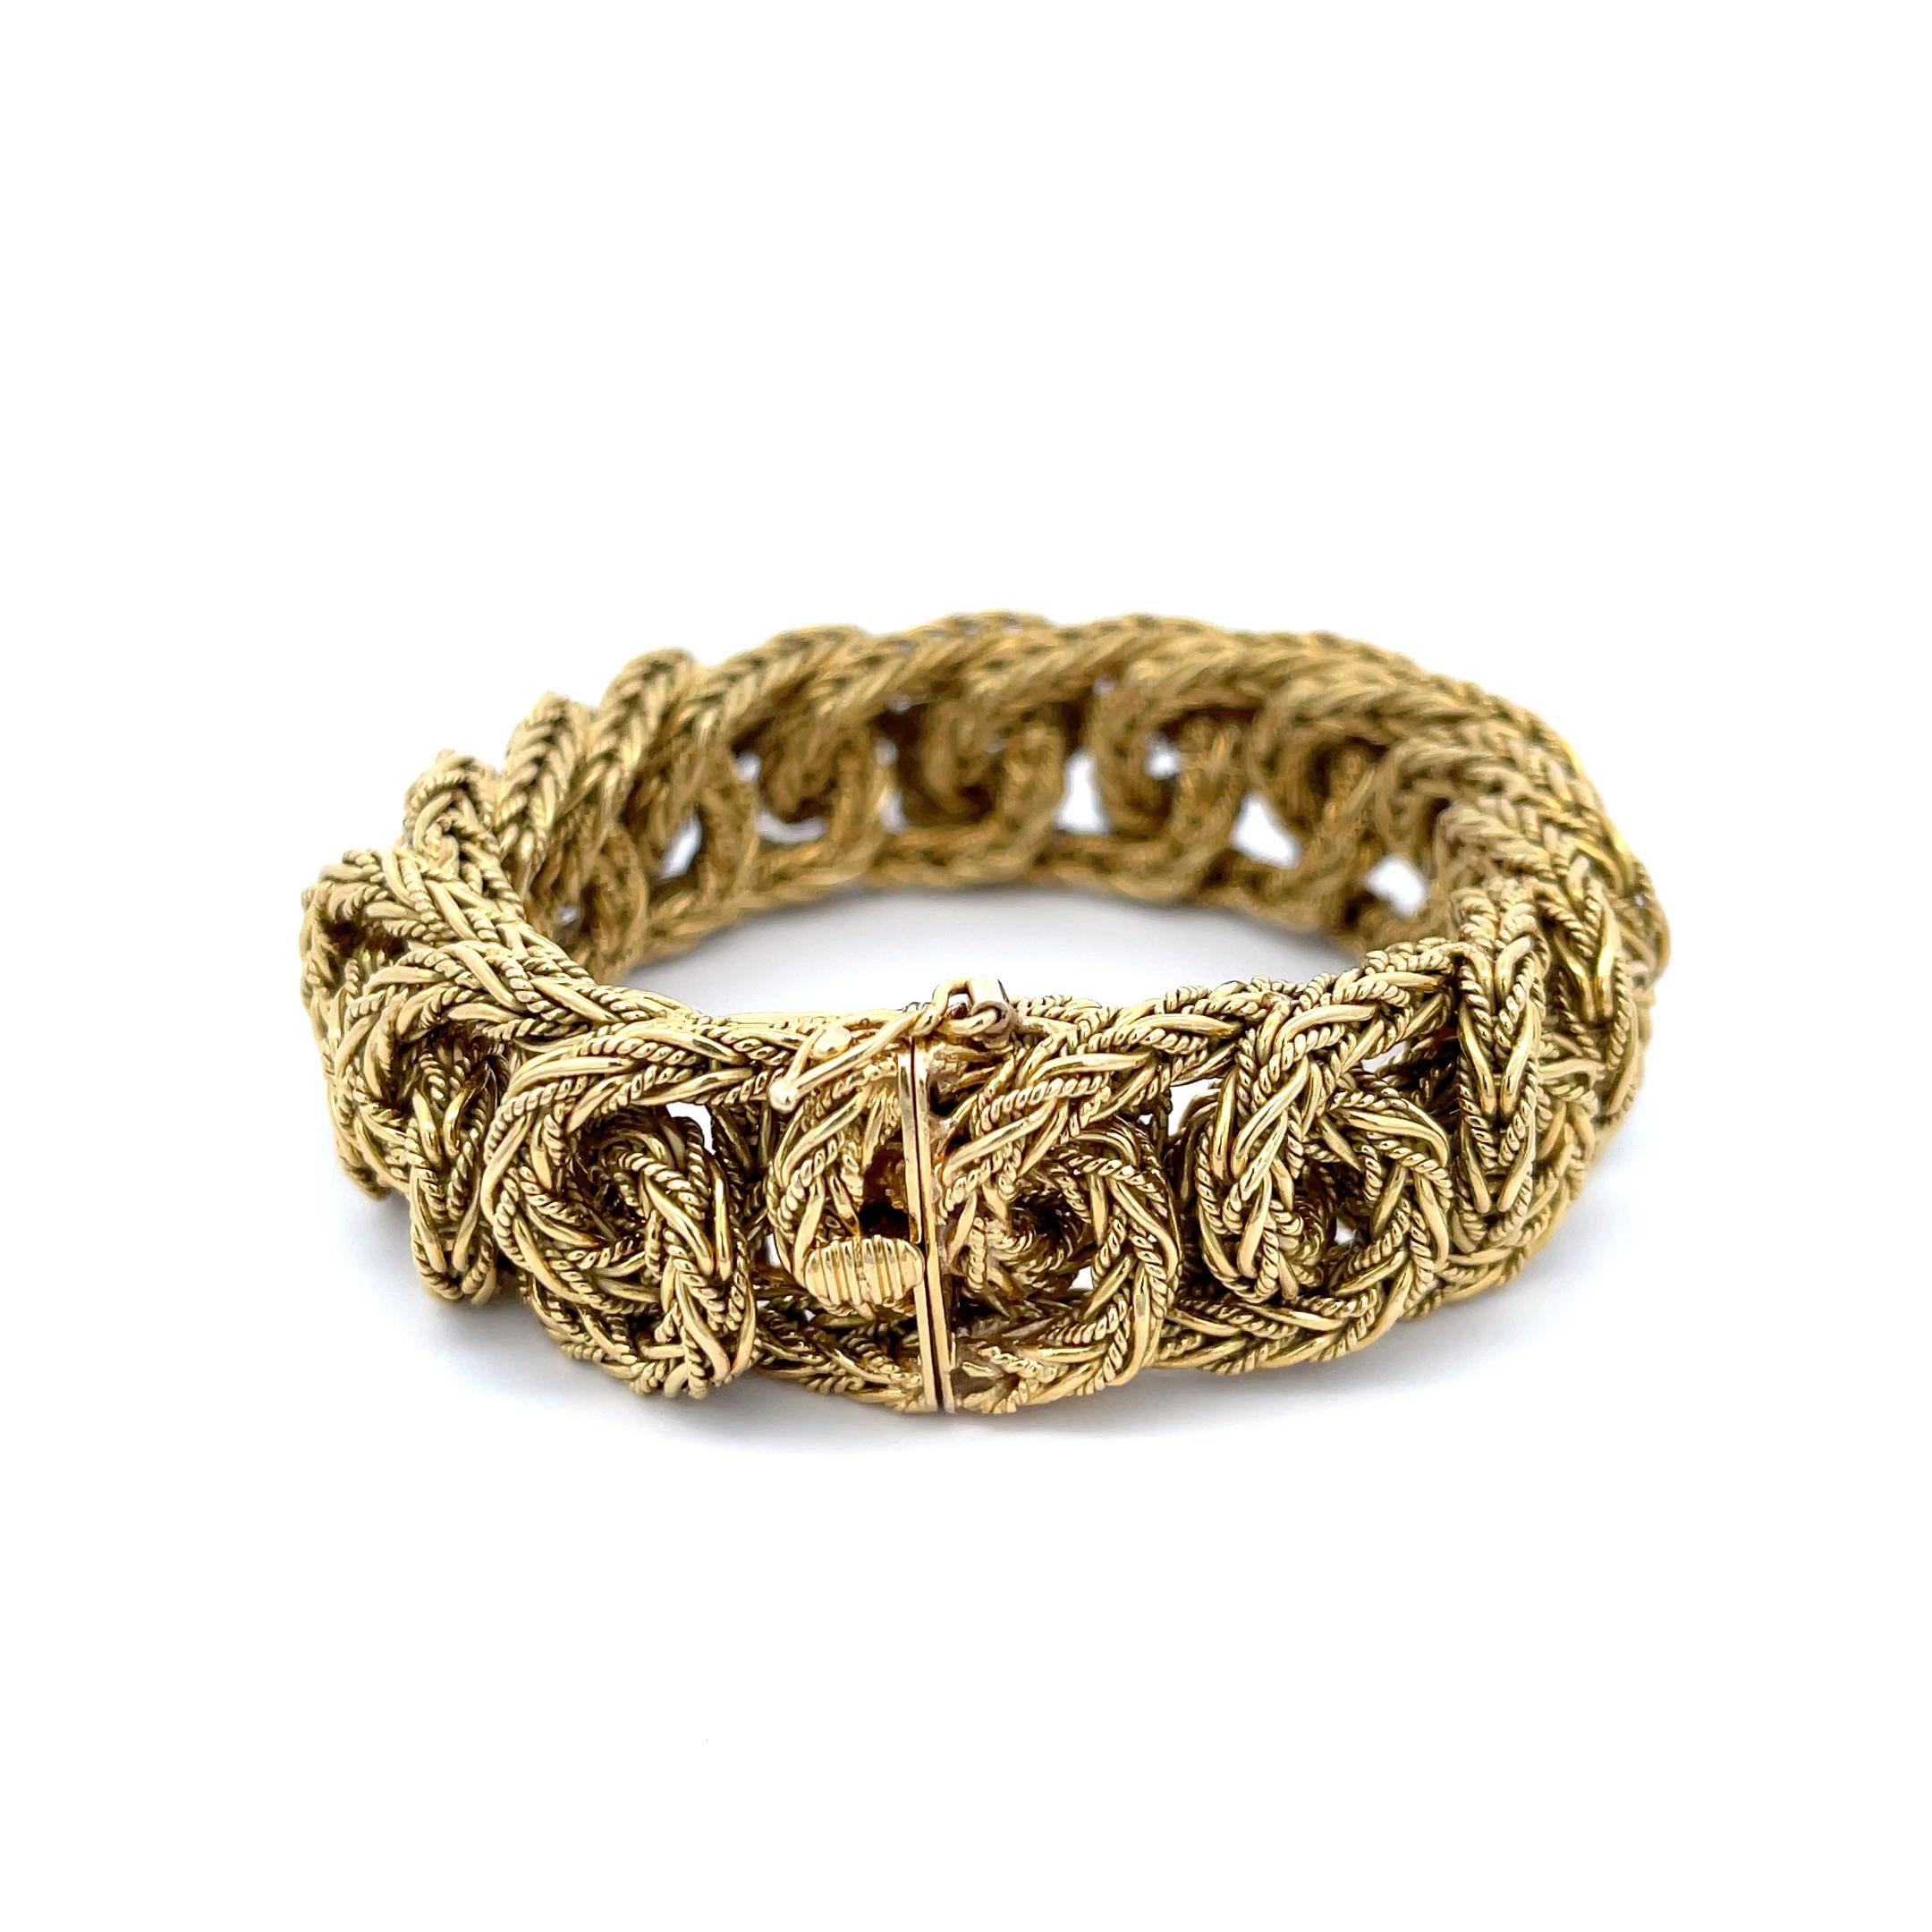 La succession de Tiffany & Co. Bracelet Vintage à maillons tressés en or jaune 18K. Ce bracelet rare est doté d'un fermoir caché avec une fermeture de sécurité en forme de huit. Il mesure 7 3/8